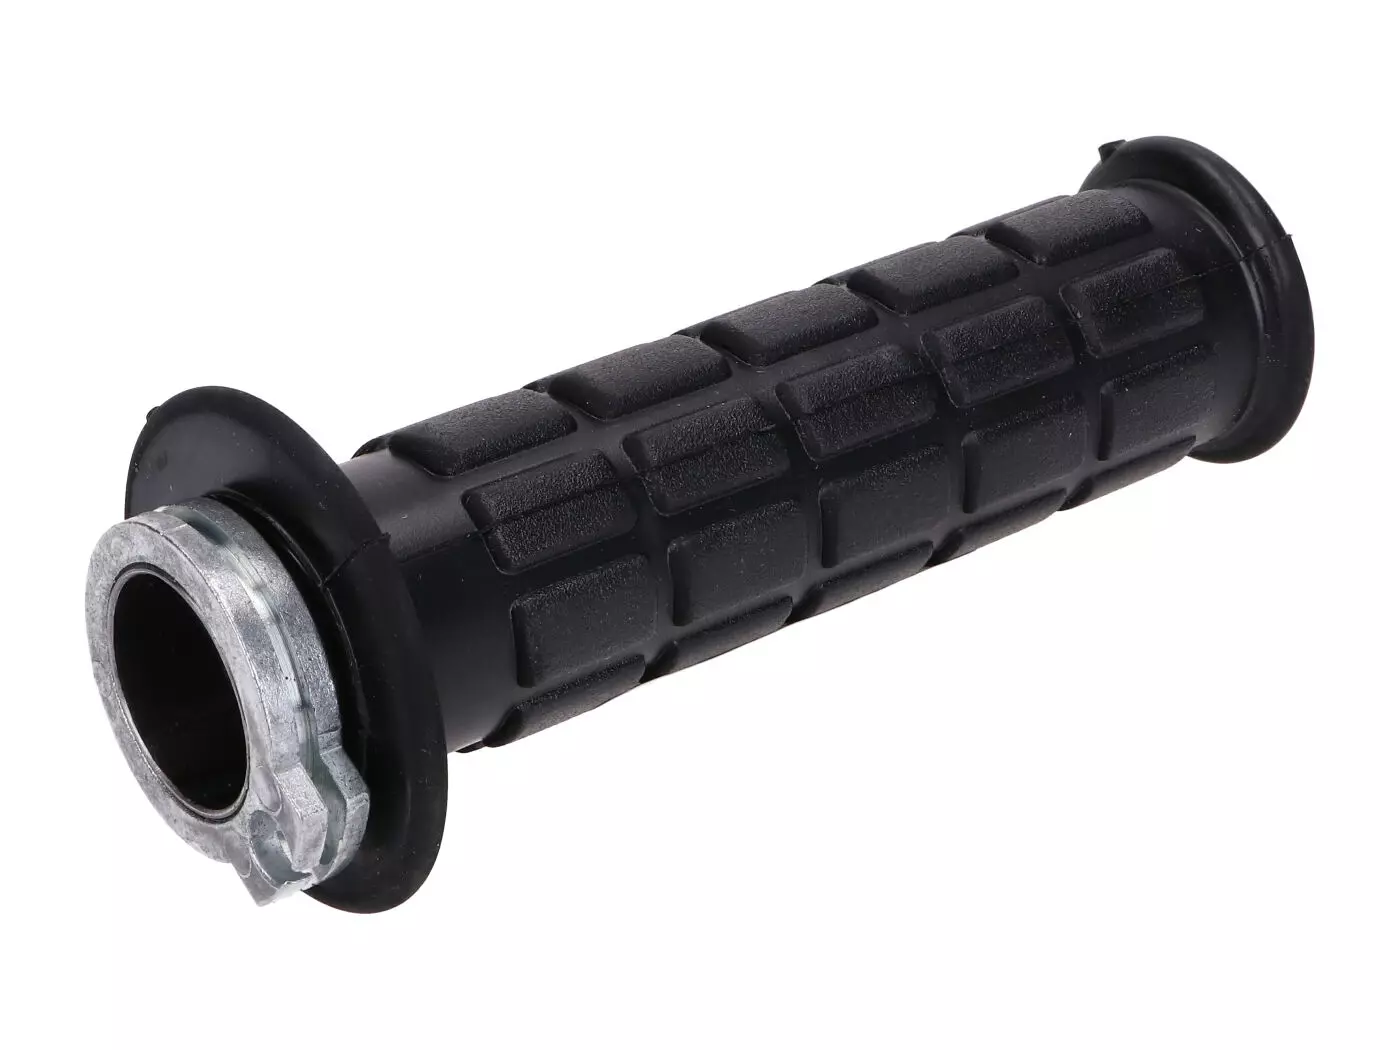 Throttle Tube W/ Rubber Grip For Simson S50, S51, S53, S70, S83, SR50, SR80